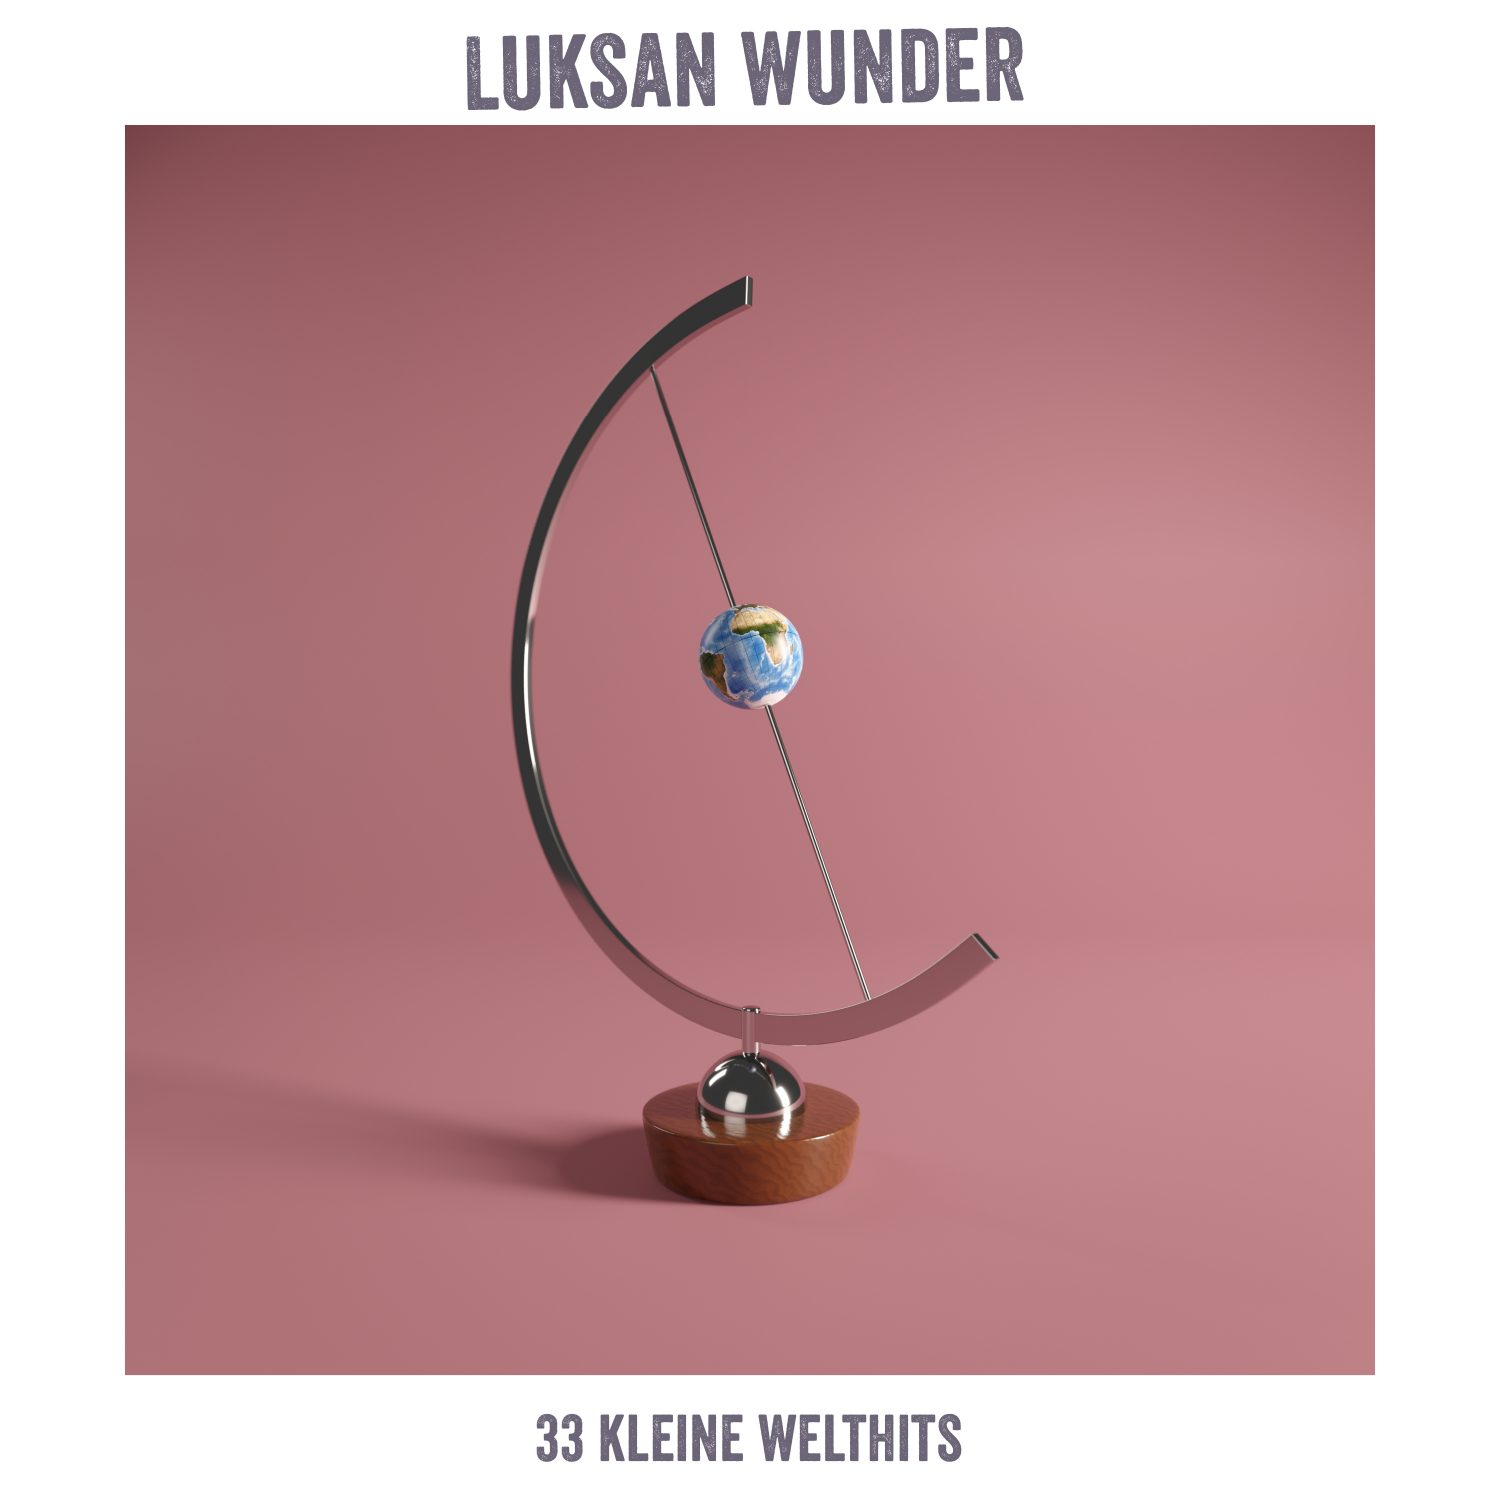 Luksan Wunder - “33 Kleine Welthits“ (Rummelplatz Musik) 